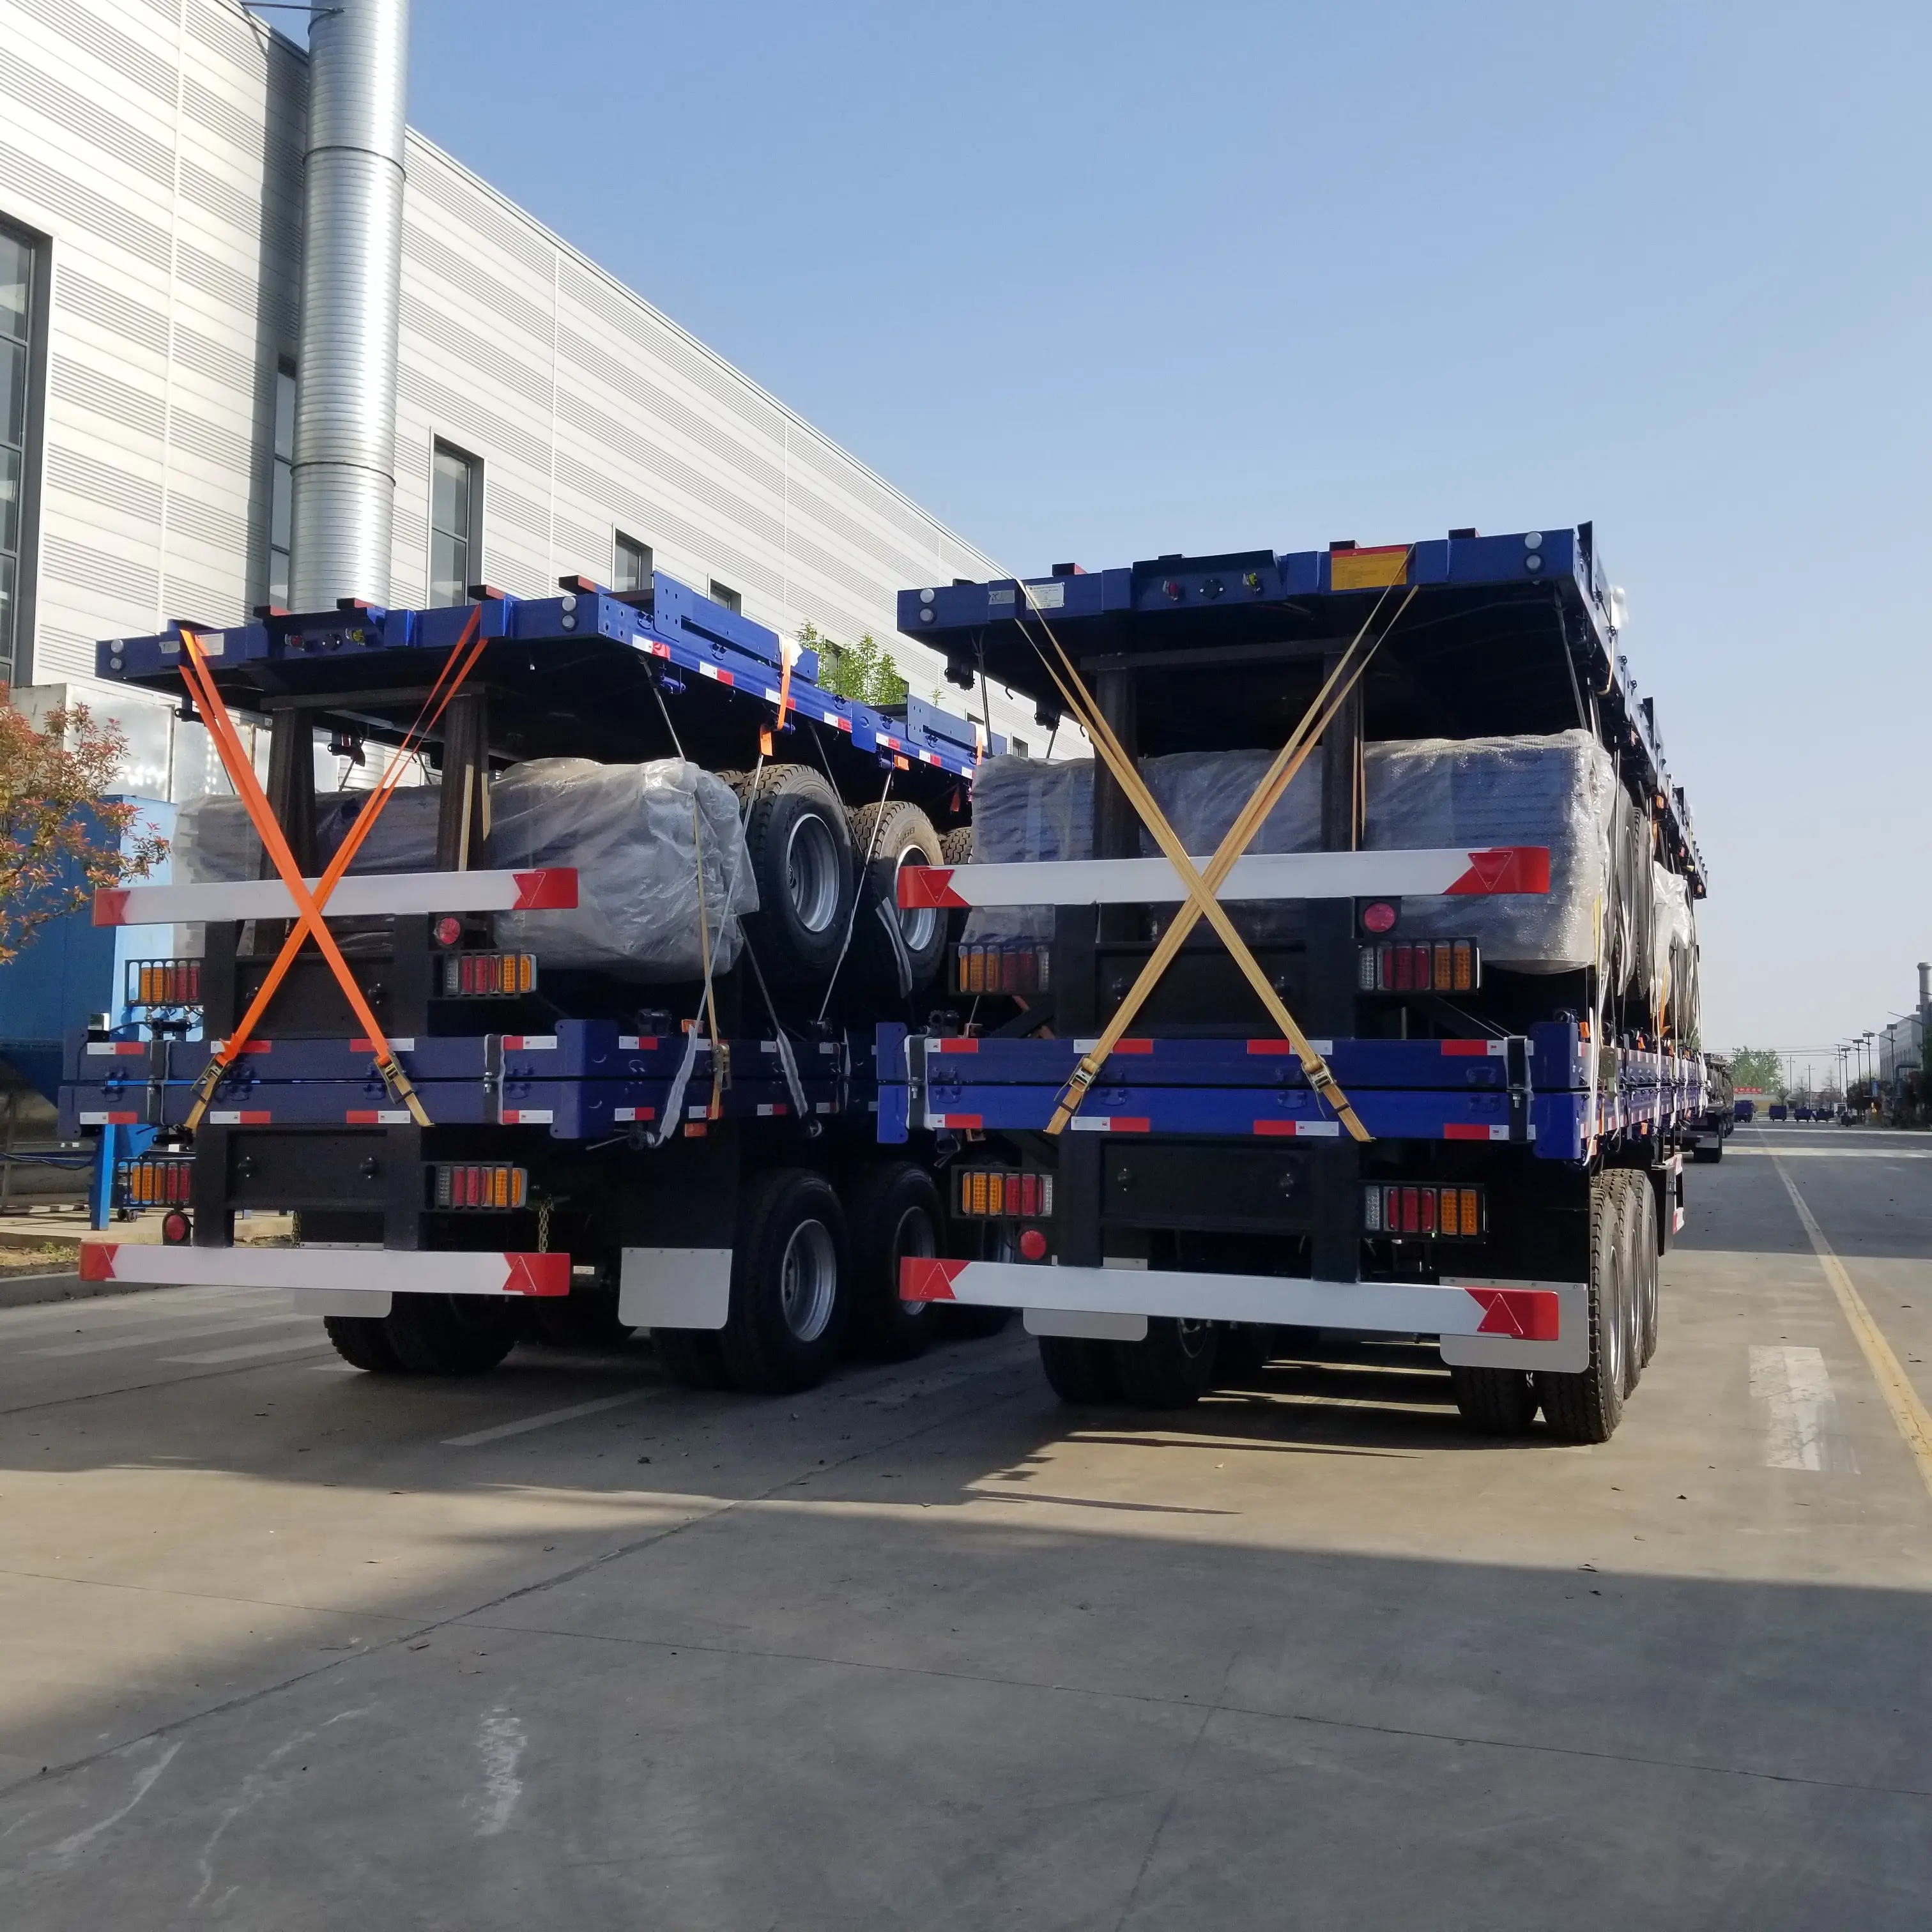 شحن رخيص JUTONG شاحنات نصف شاحنة مسطحة مستعملة شاحنة حاويات مسطحة للبيع من المصنع أفضل محورين 3 محاور 40 قدم من الفولاذ الأزرق